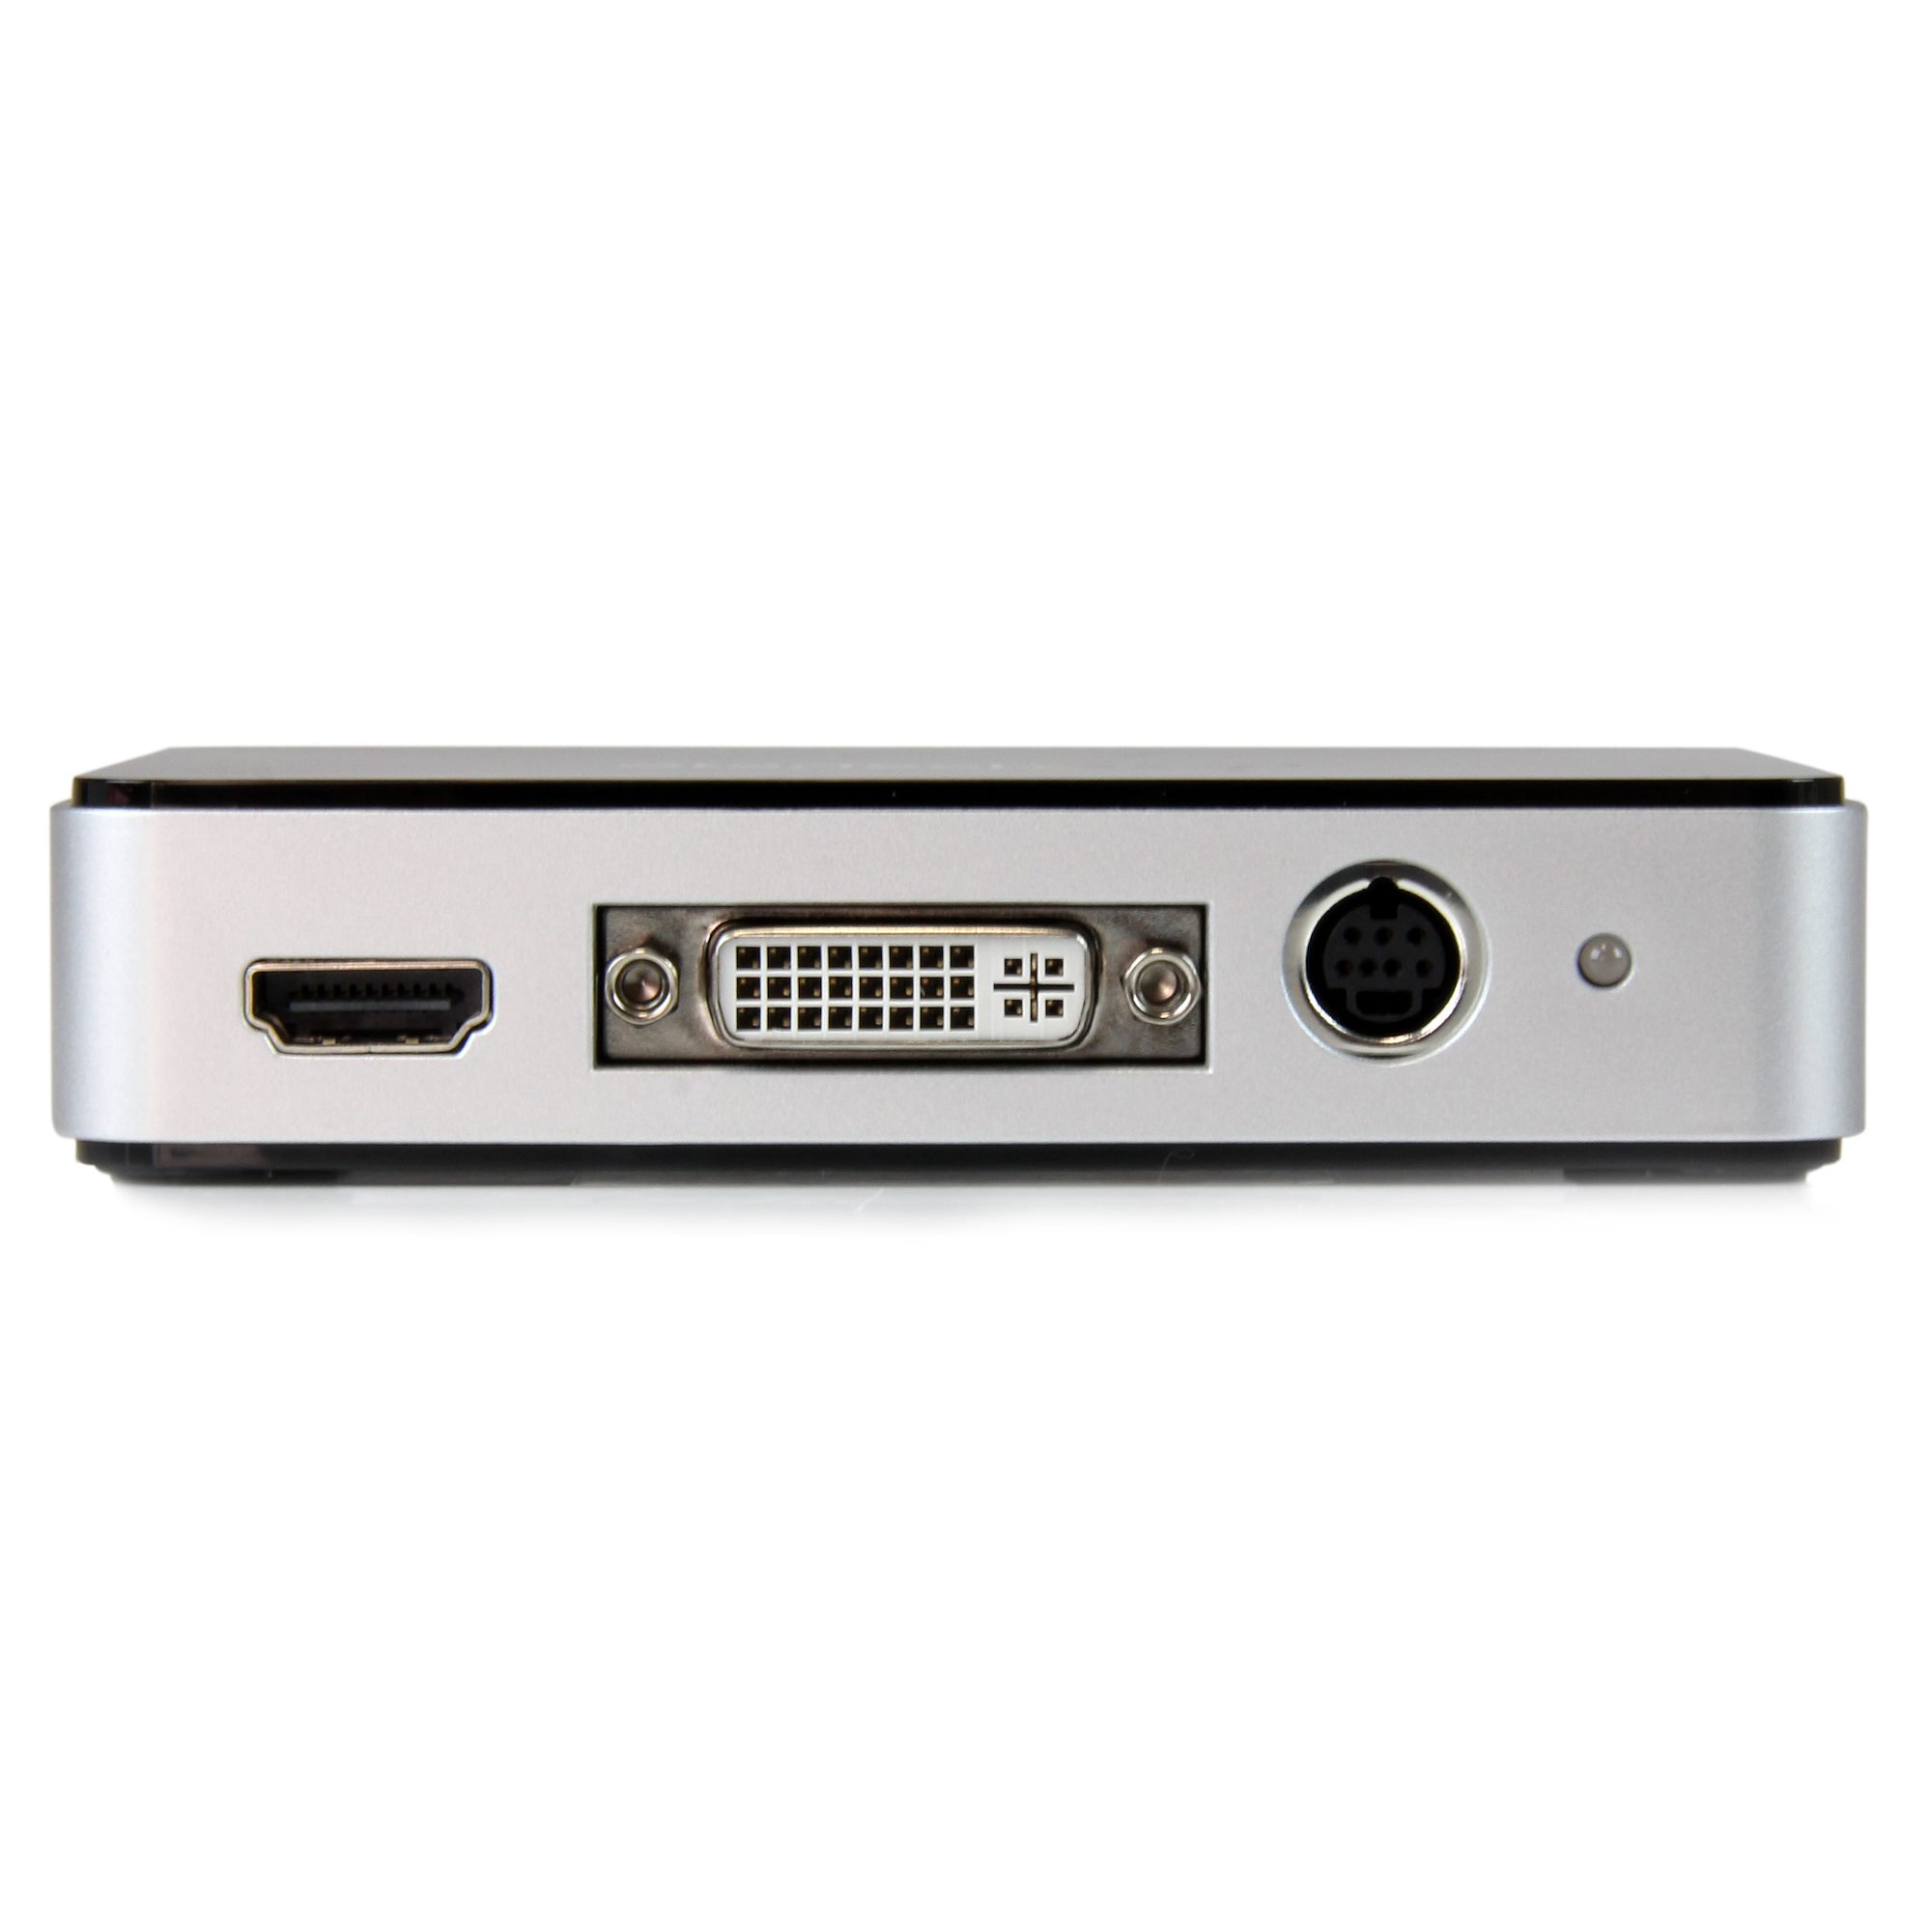 StarTech - Capturadora de Vídeo USB 3.0 a HDMI, DVI, VGA y Vídeo